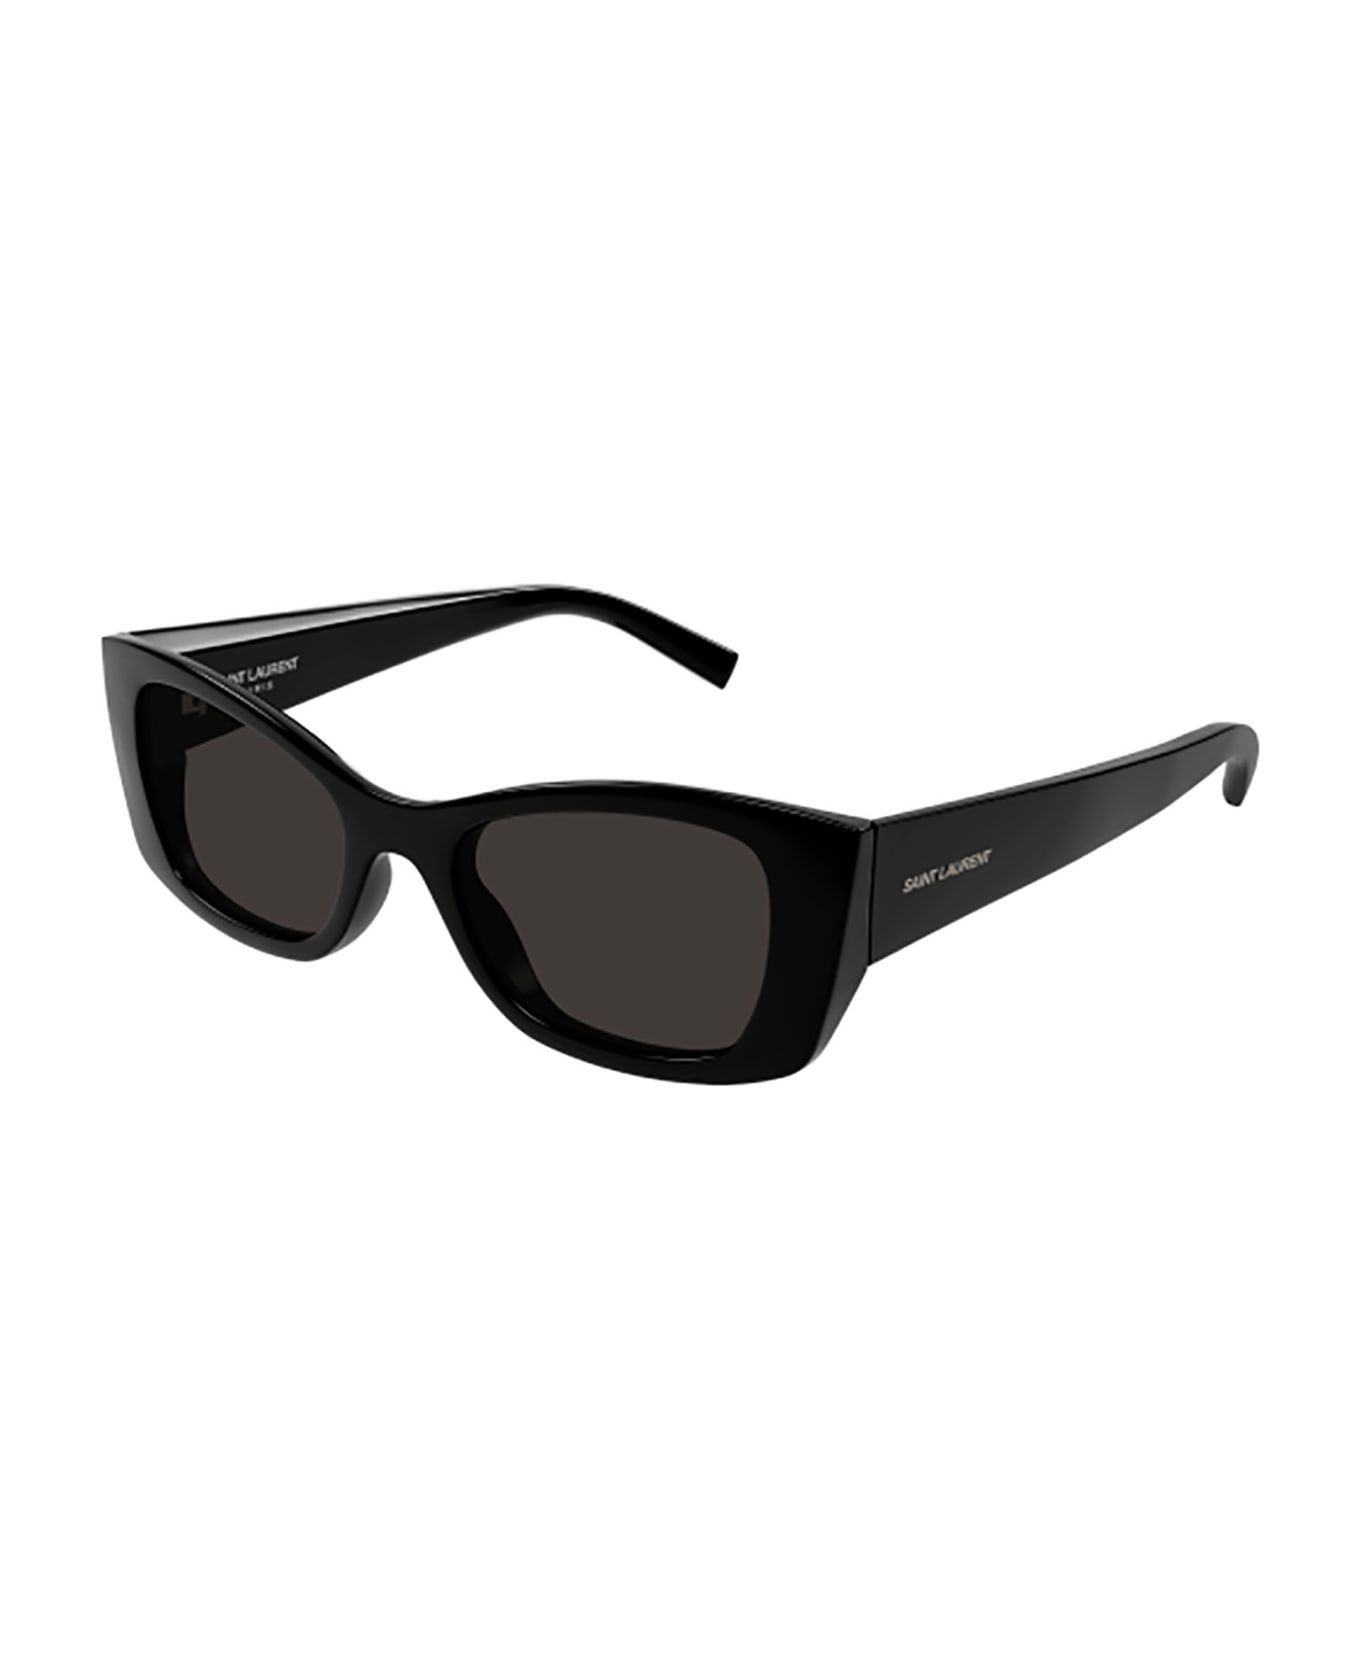 Saint Laurent Eyewear Sl 593 Sunglasses - 001 black black black